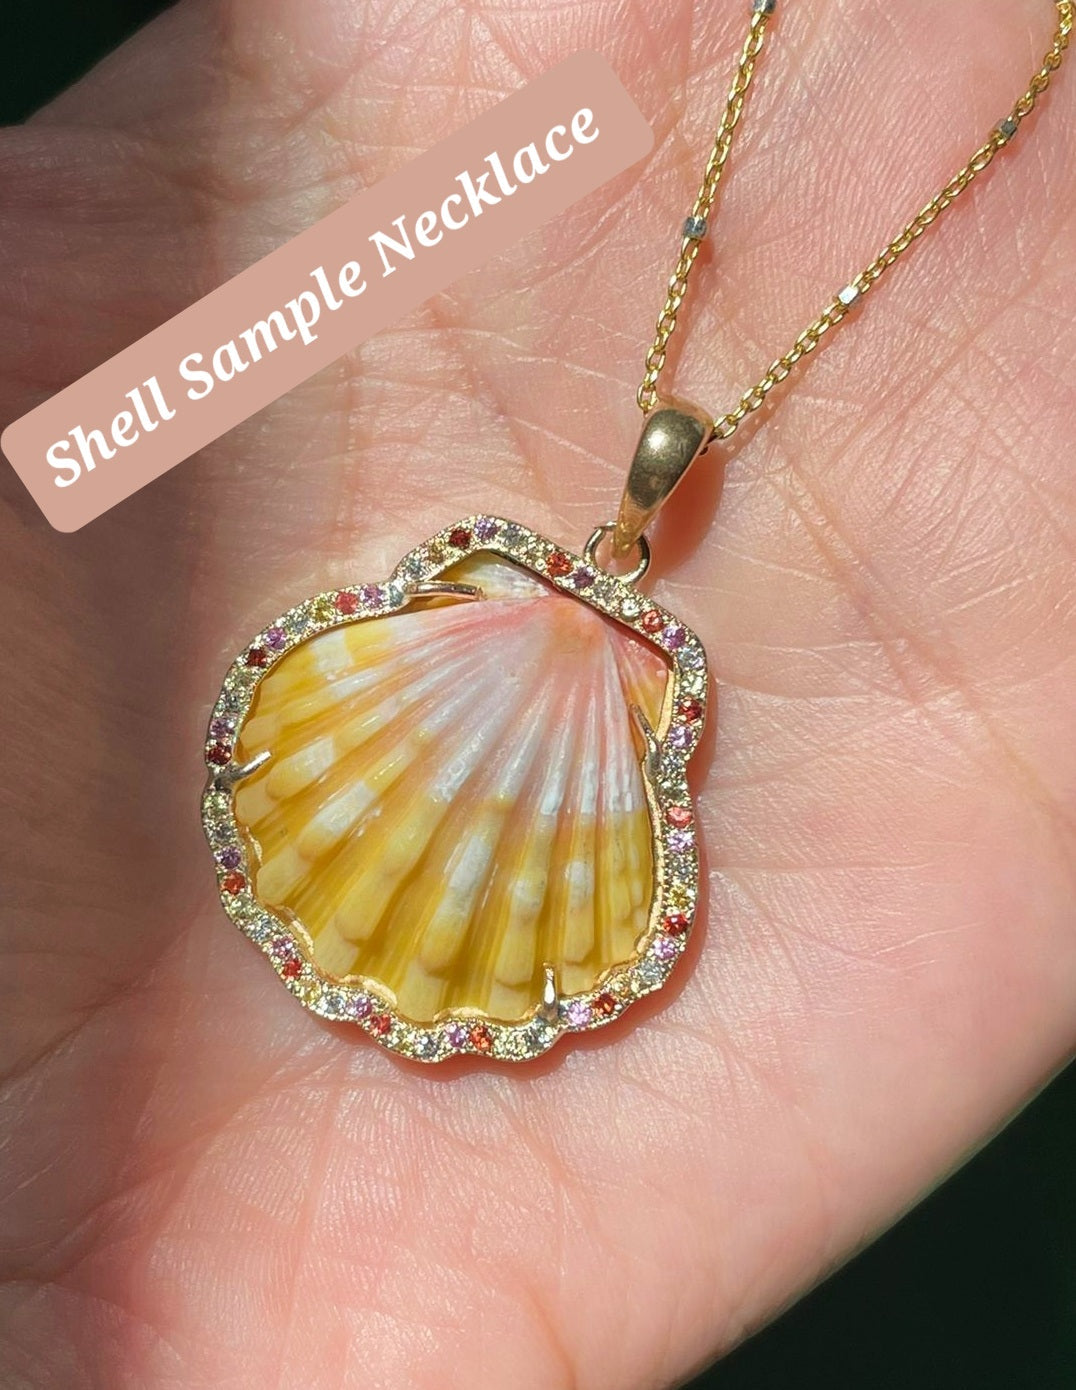 Pre - Order Enchanted Sunrise Shell Necklace I * Medium